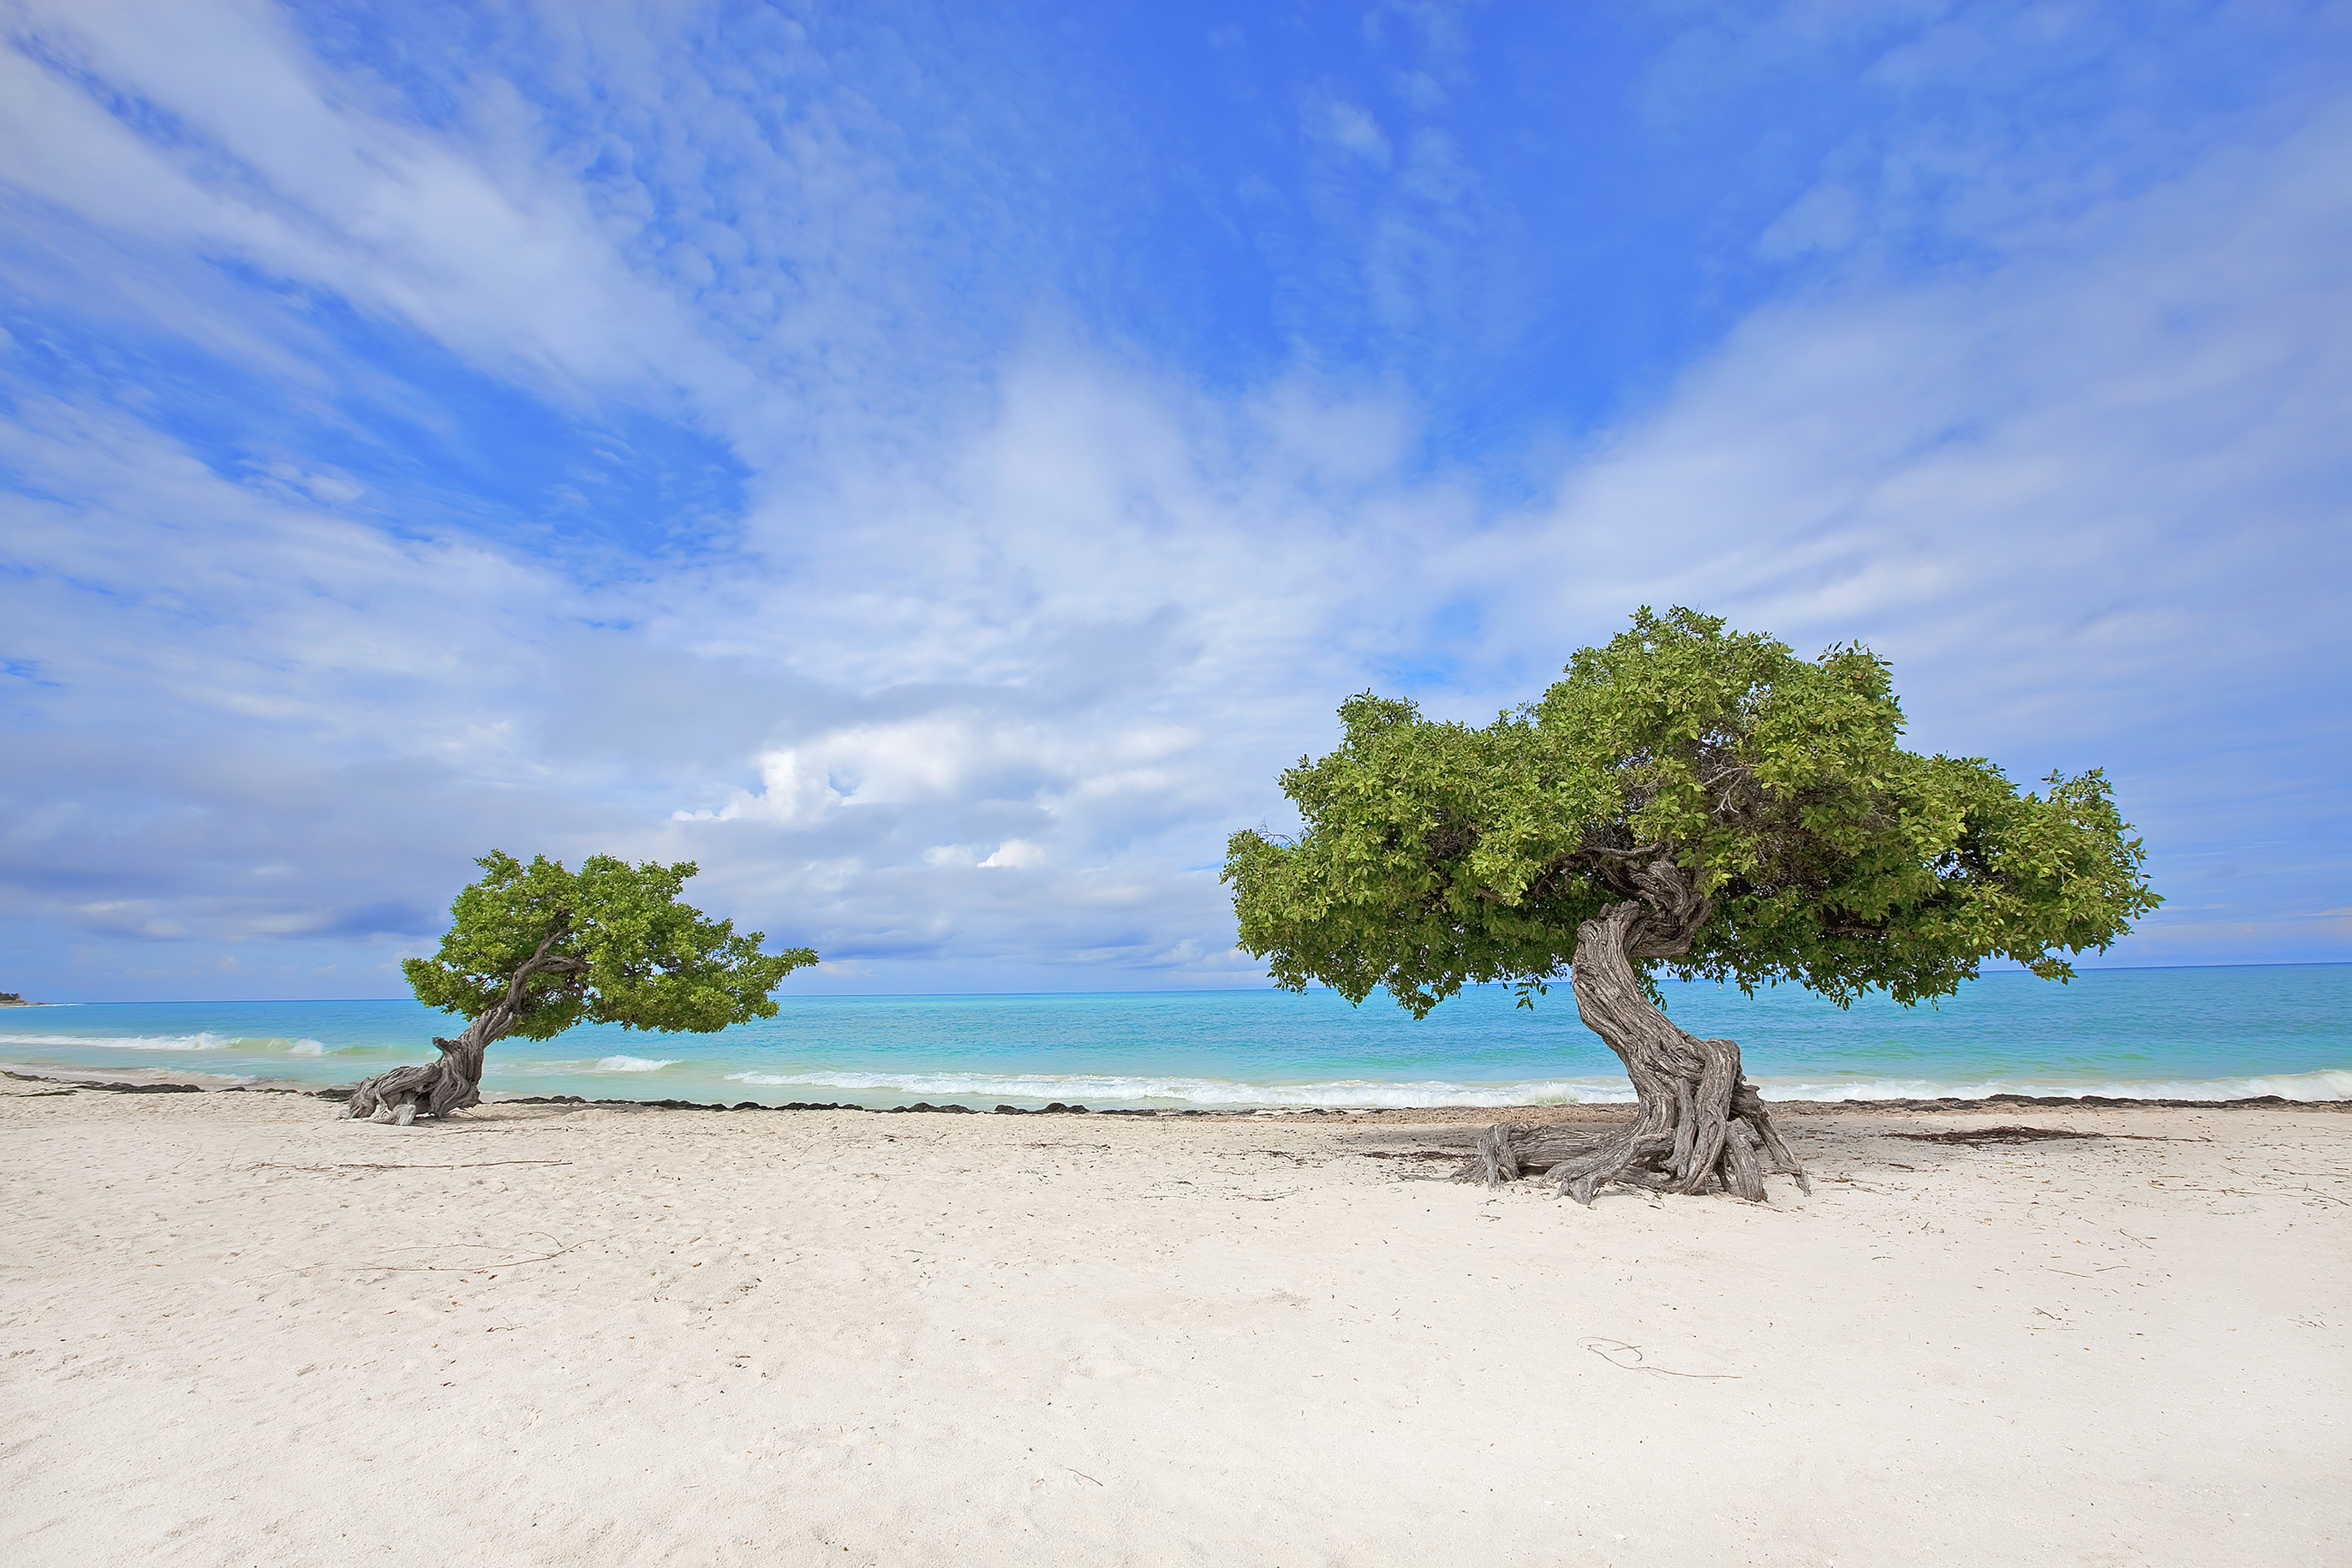 Aruba ha lanzado el programa “One Happy Workation”. Si bien no hay zonas de trabajo designadas específicas, muchos alojamientos tienen centros de negocios para que las personas trabajen (Shutterstock)